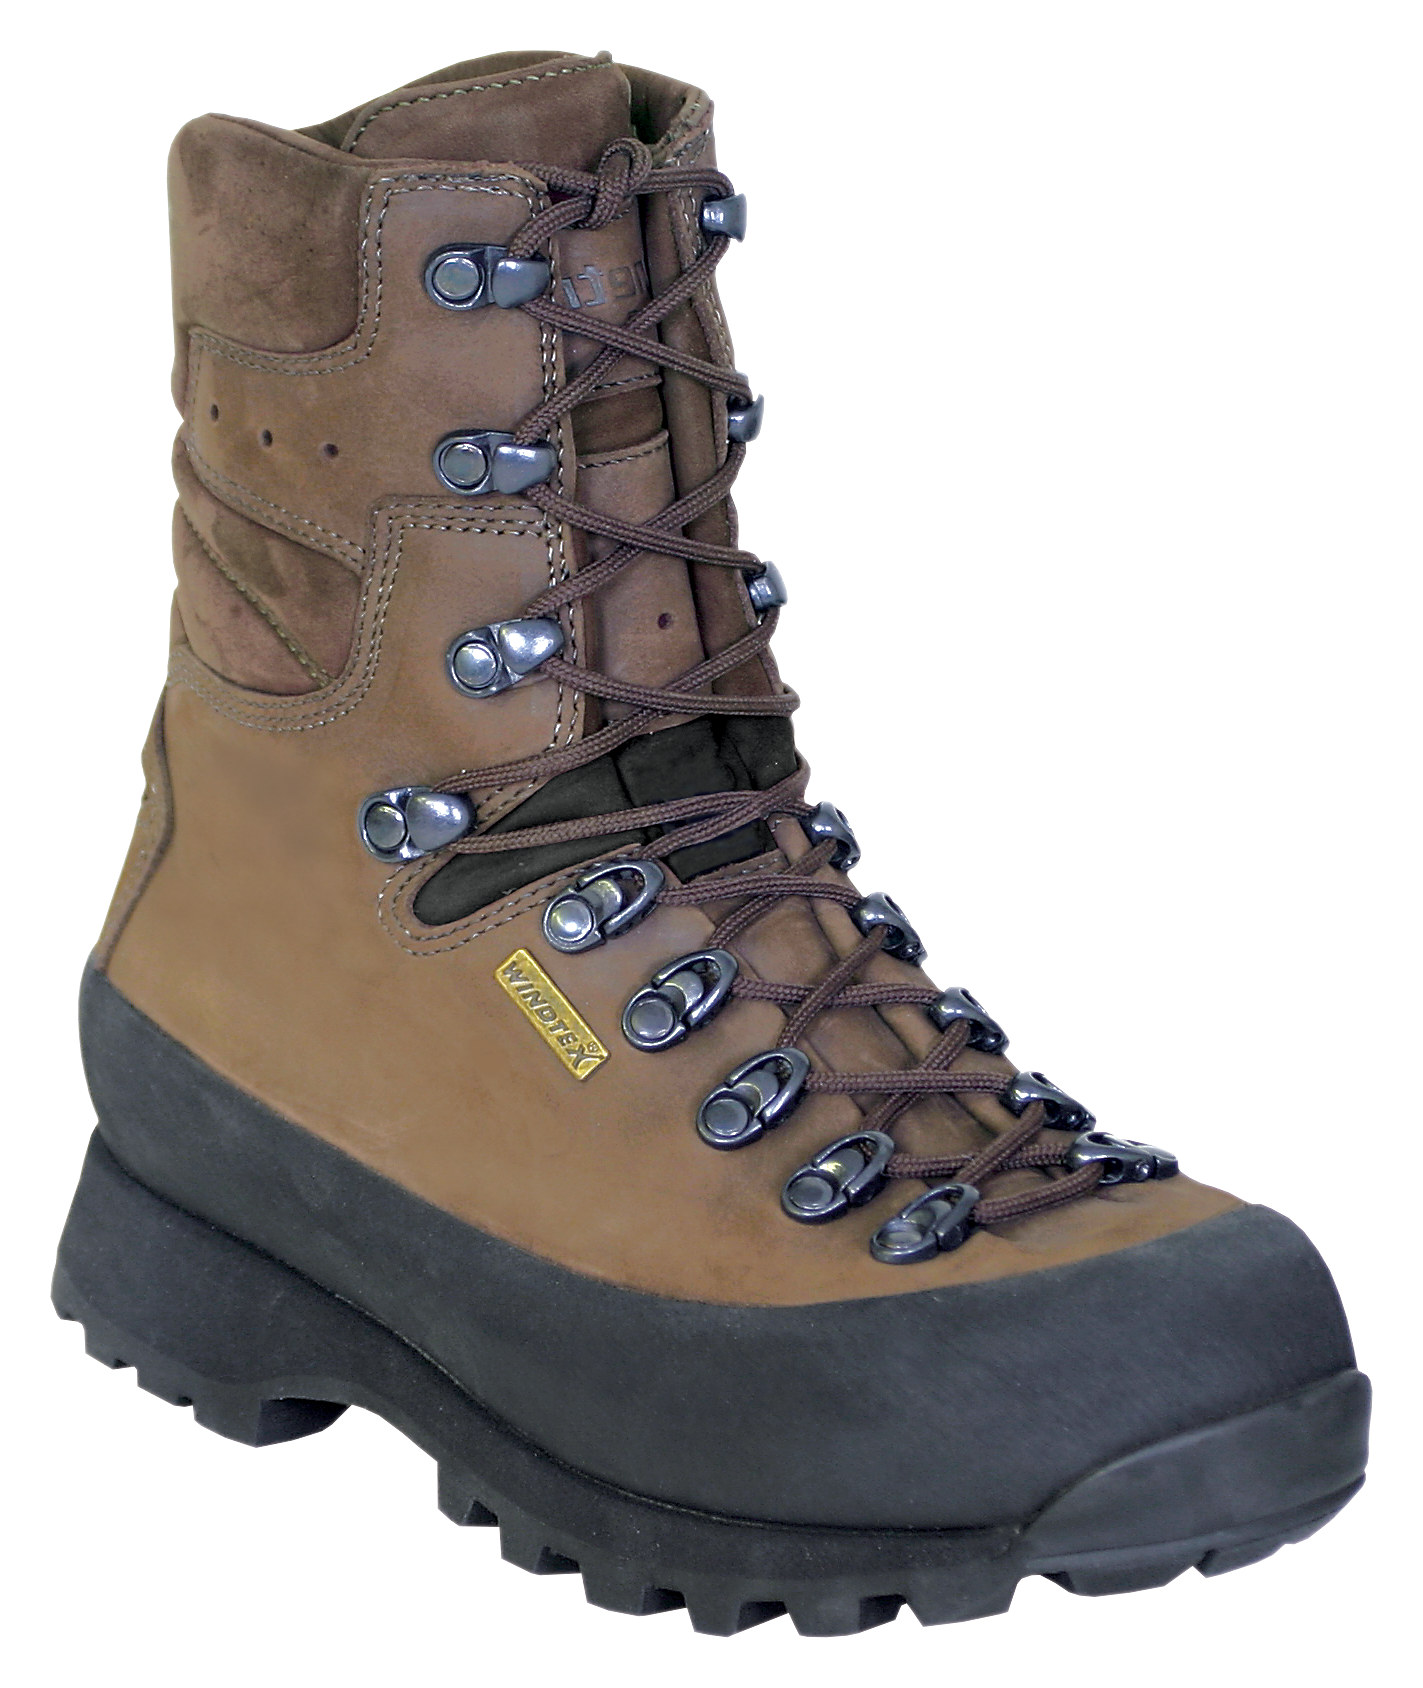 Kenetrek Hiker Waterproof Hiking Boots for Ladies - Brown -  9M